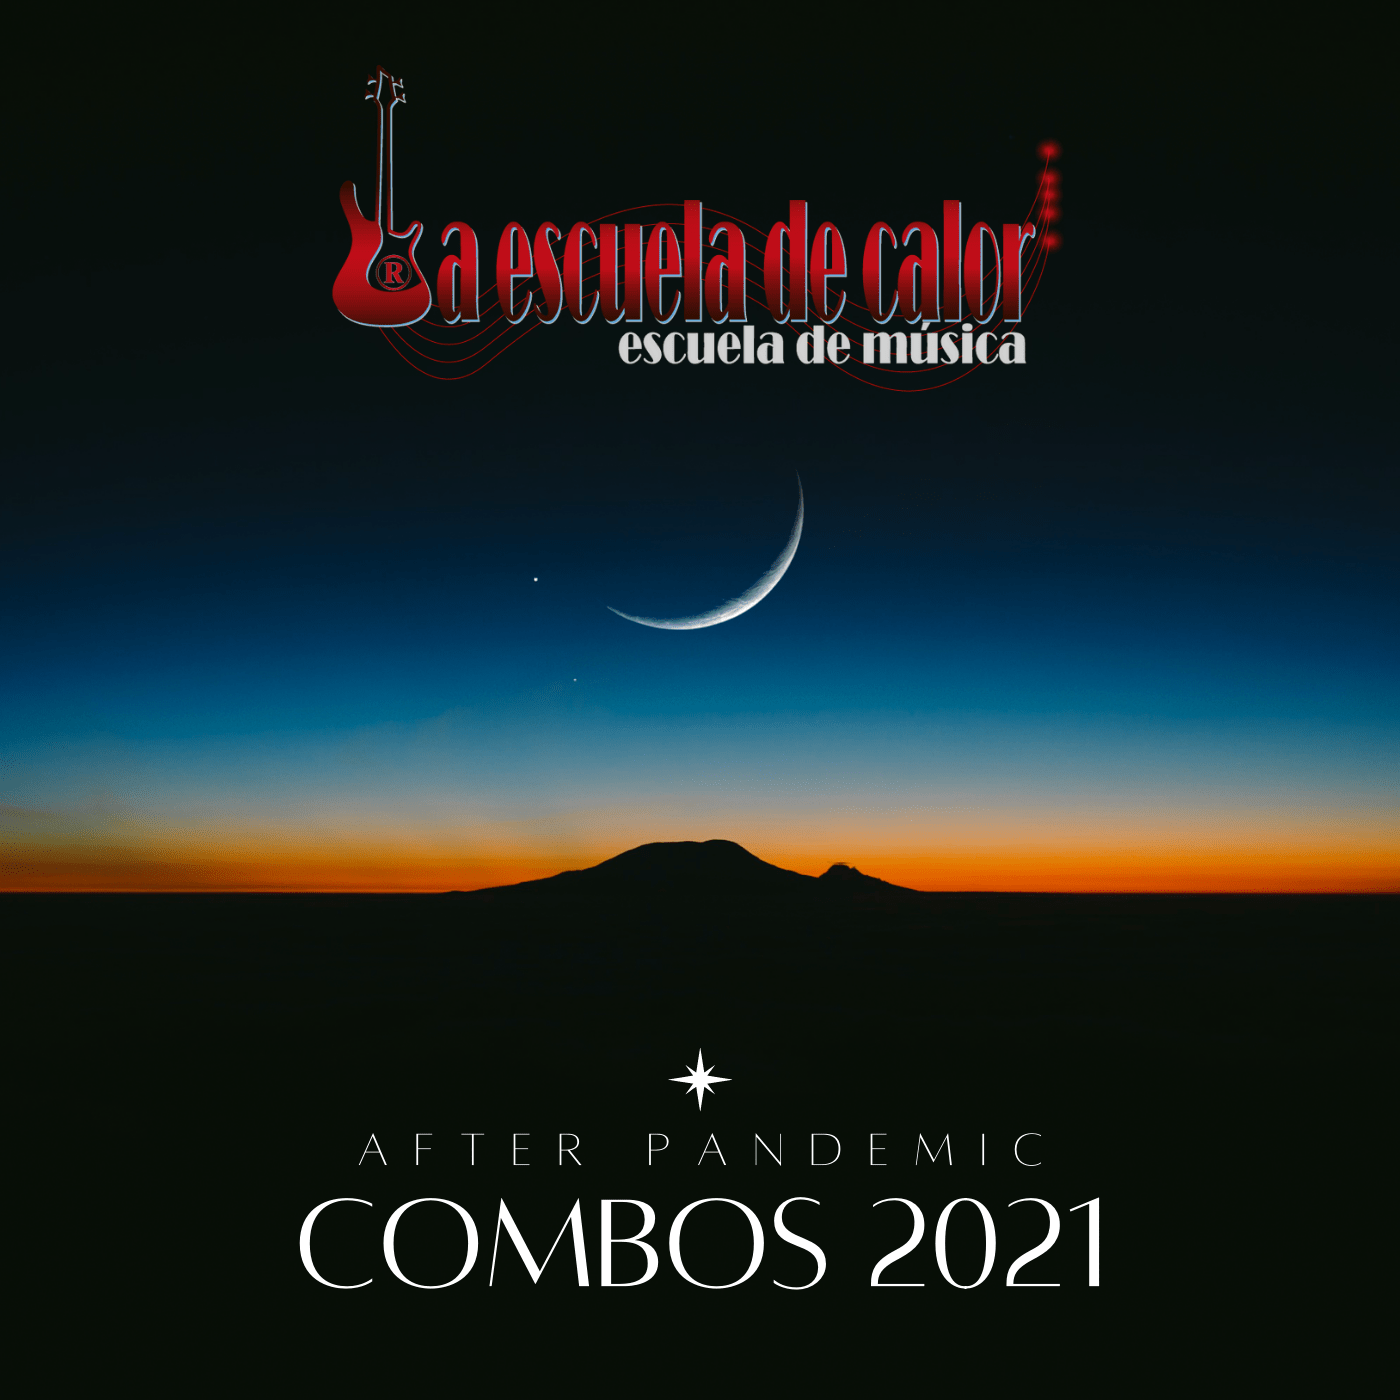 Portada disco combos 2021 "After Pandemic"